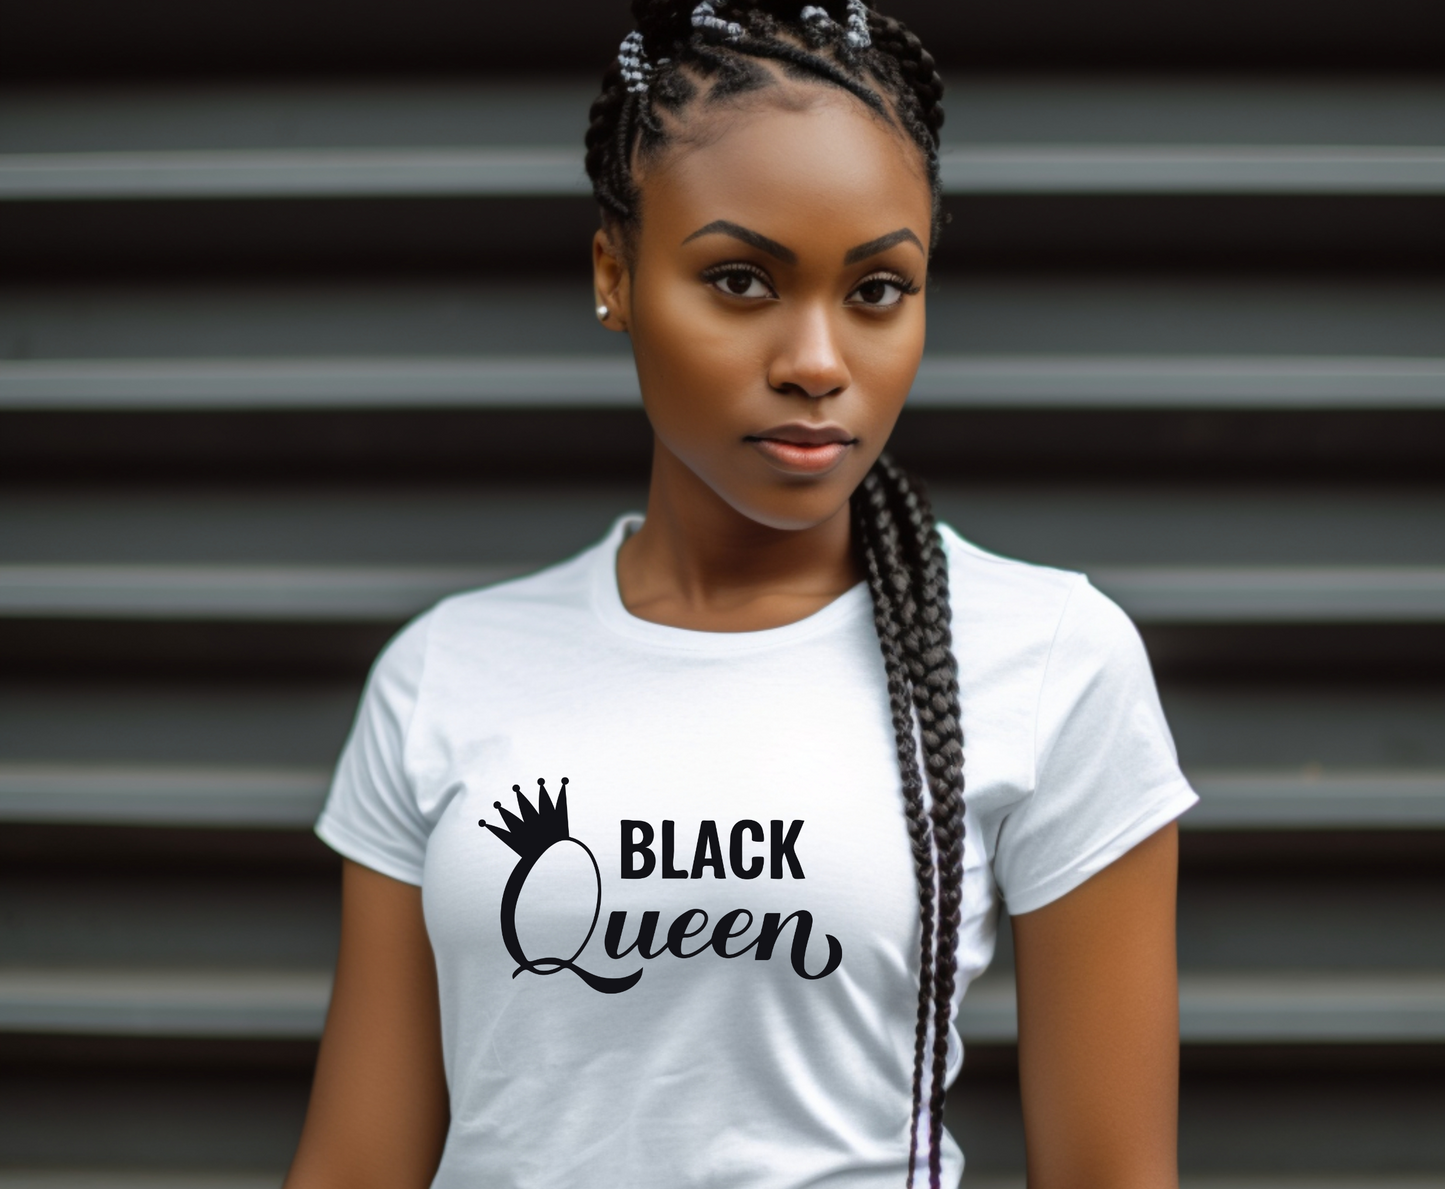 "Black Queen" T-Shirt